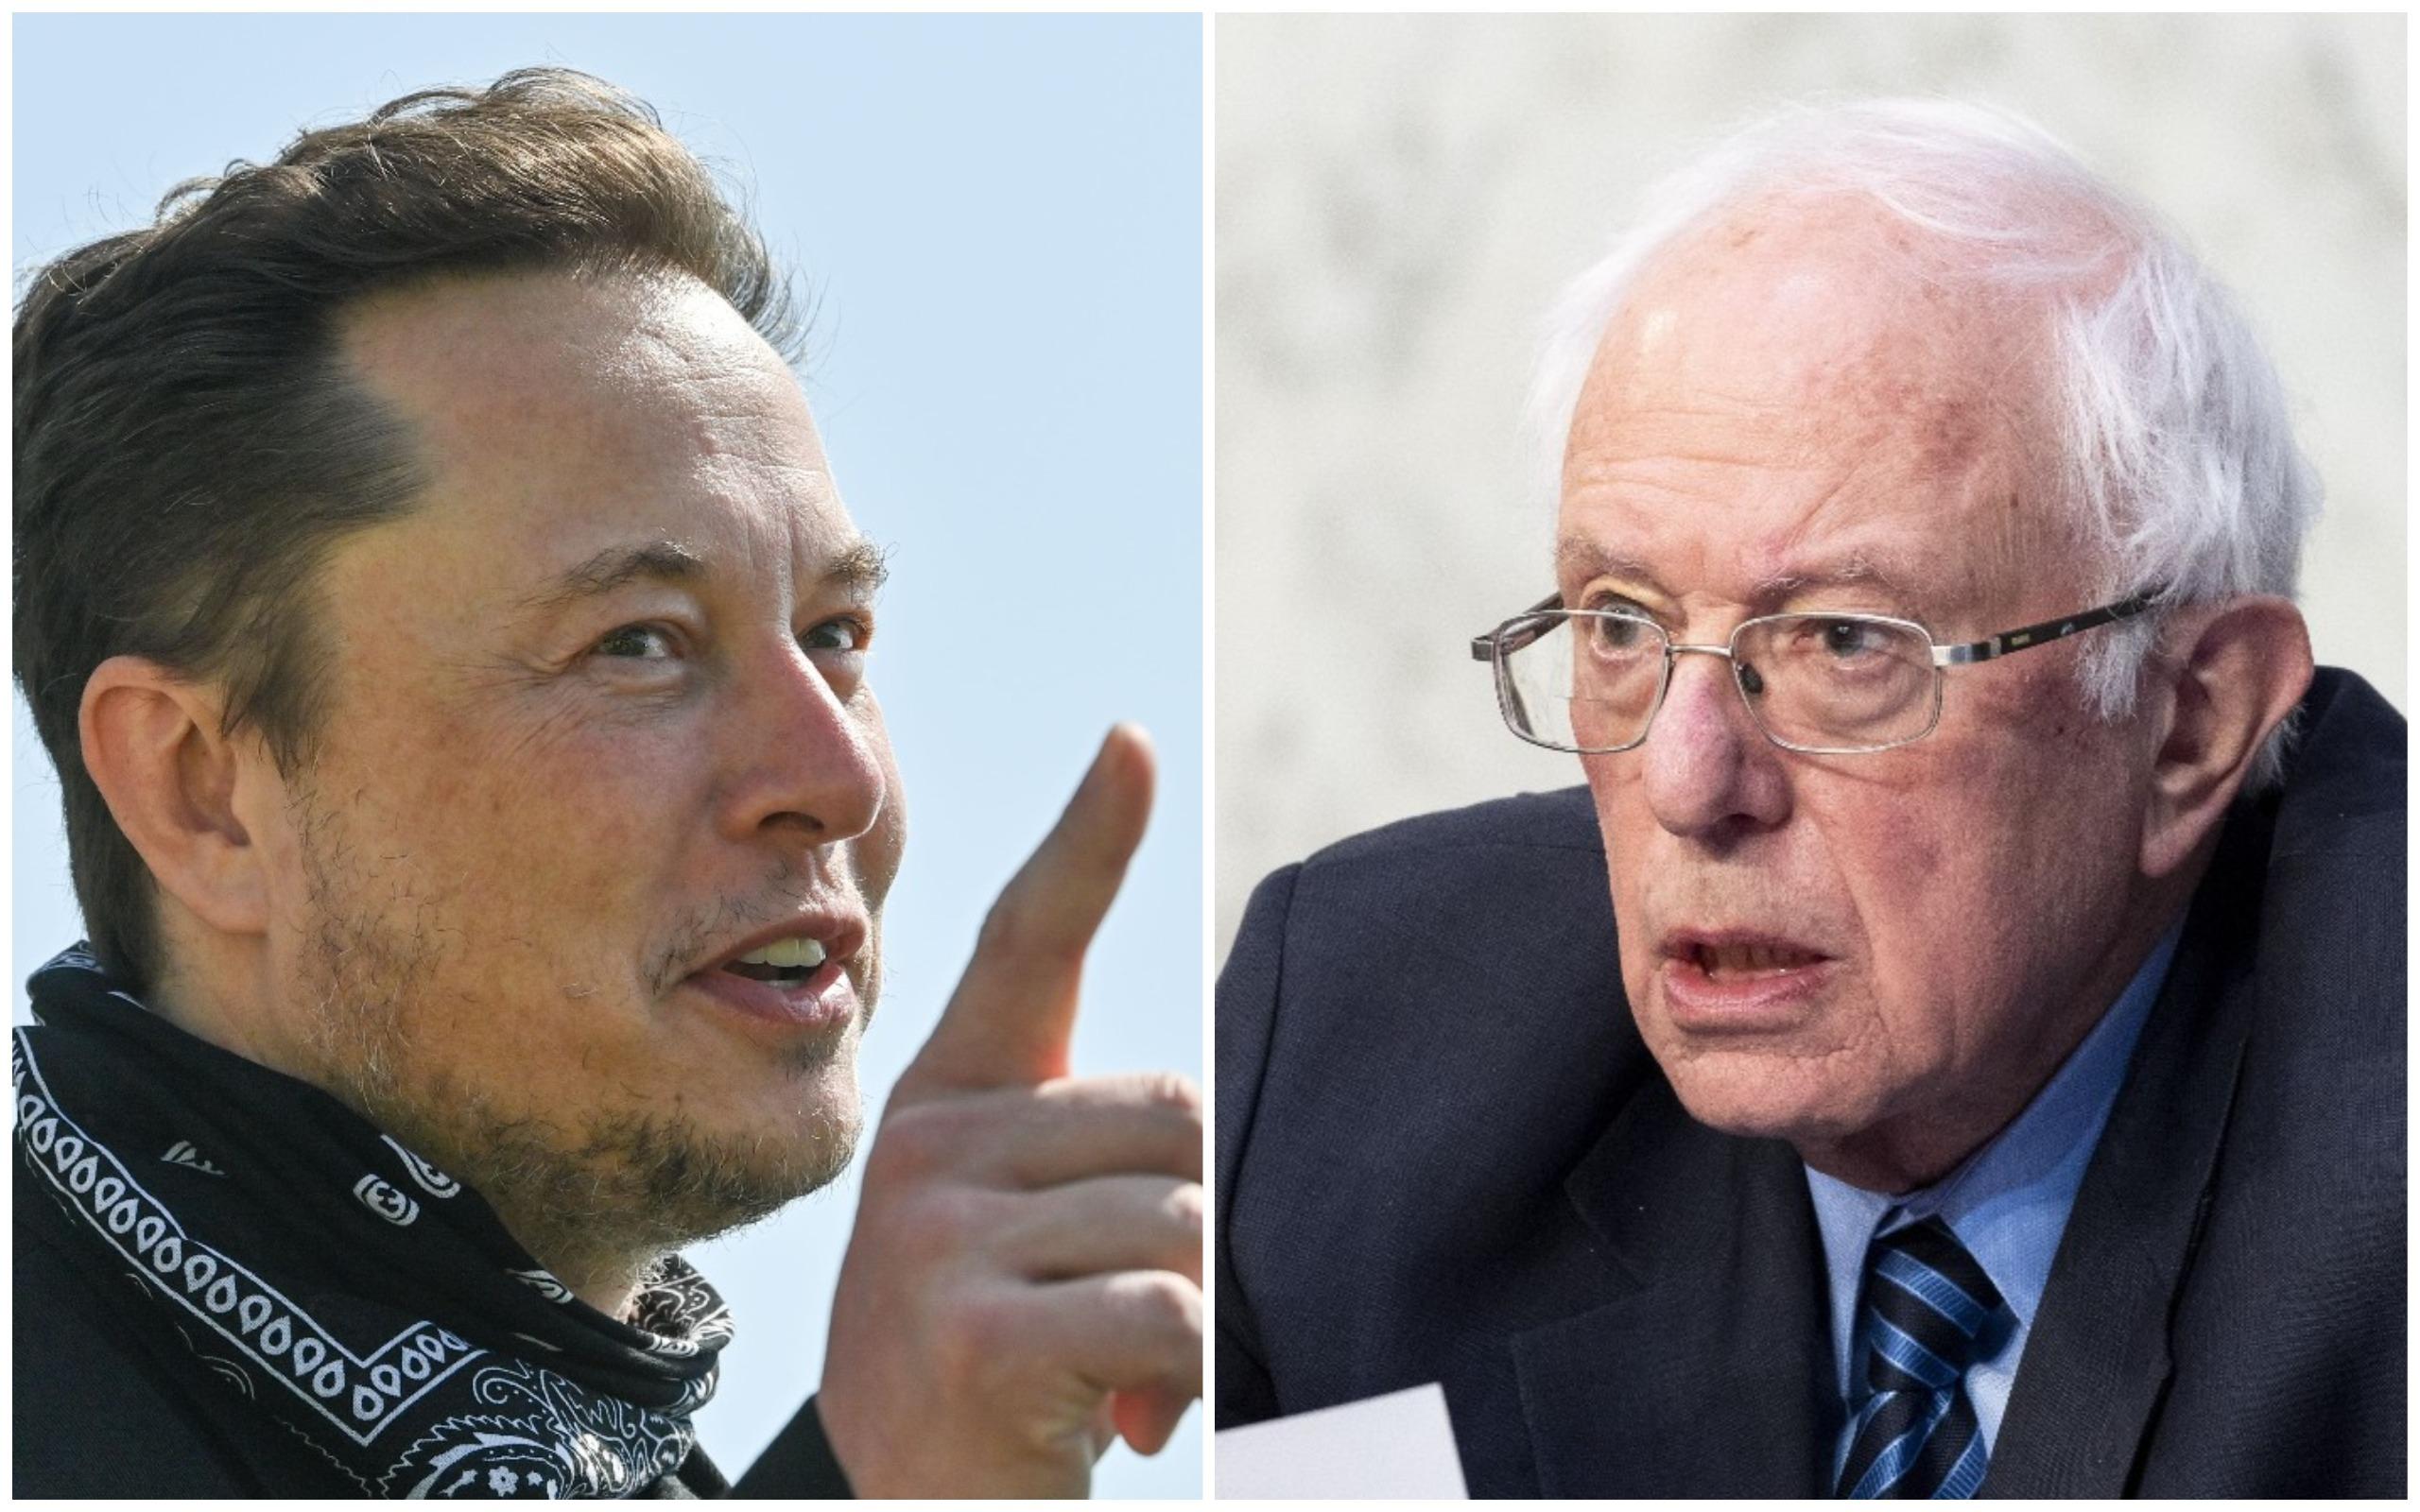 Elon Musk, replică acidă la mesajul lui Bernie Sanders privind taxarea bogaților: ”Tot uit că ești încă în viață”